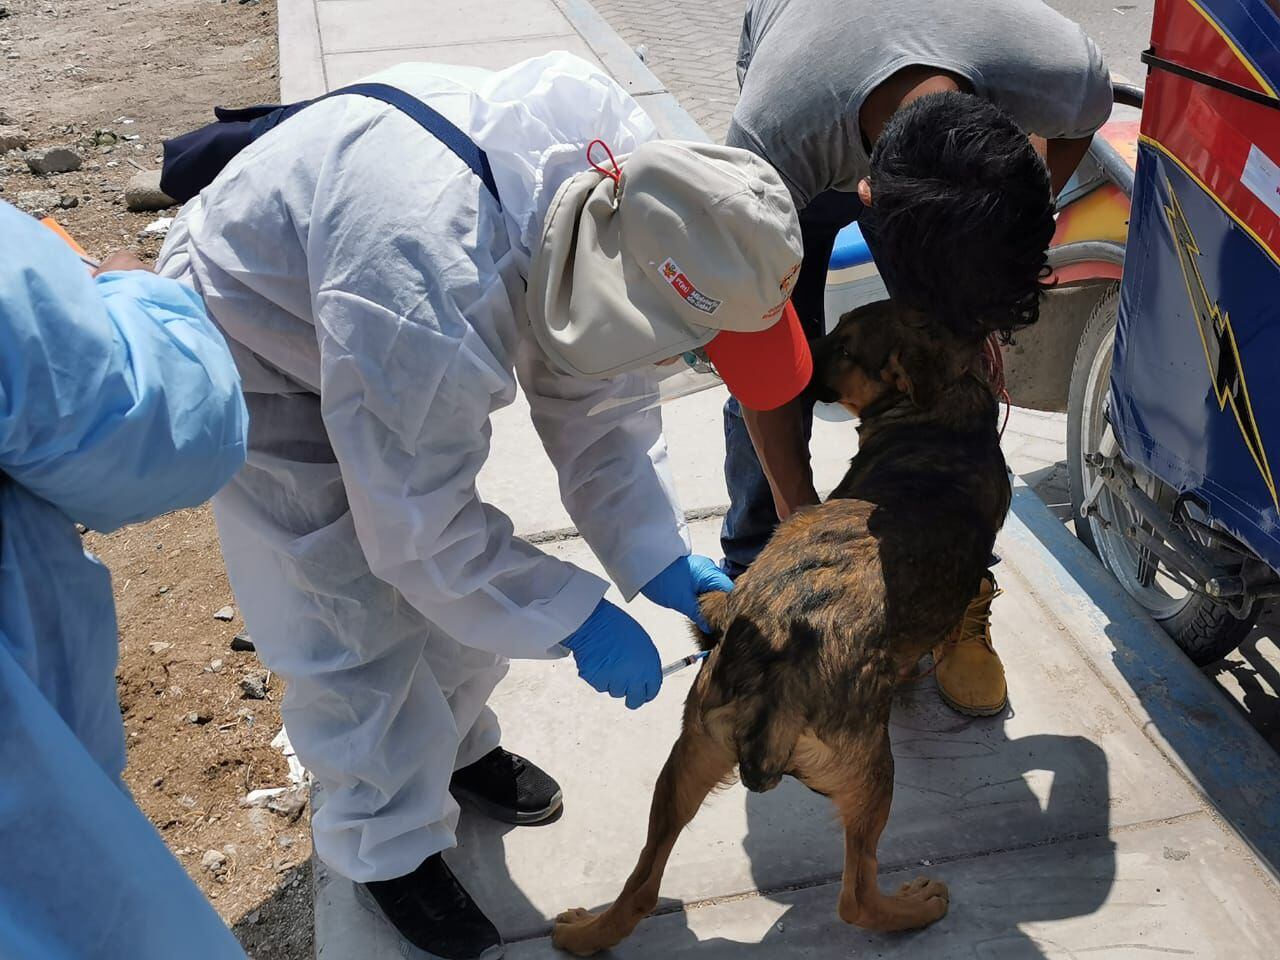 Los especialistas temen que aparezcan nuevos casos de rabia en humanos, y exhortan a que las autoridades prioricen la vacunación de perros en zonas focalizadas de Arequipa